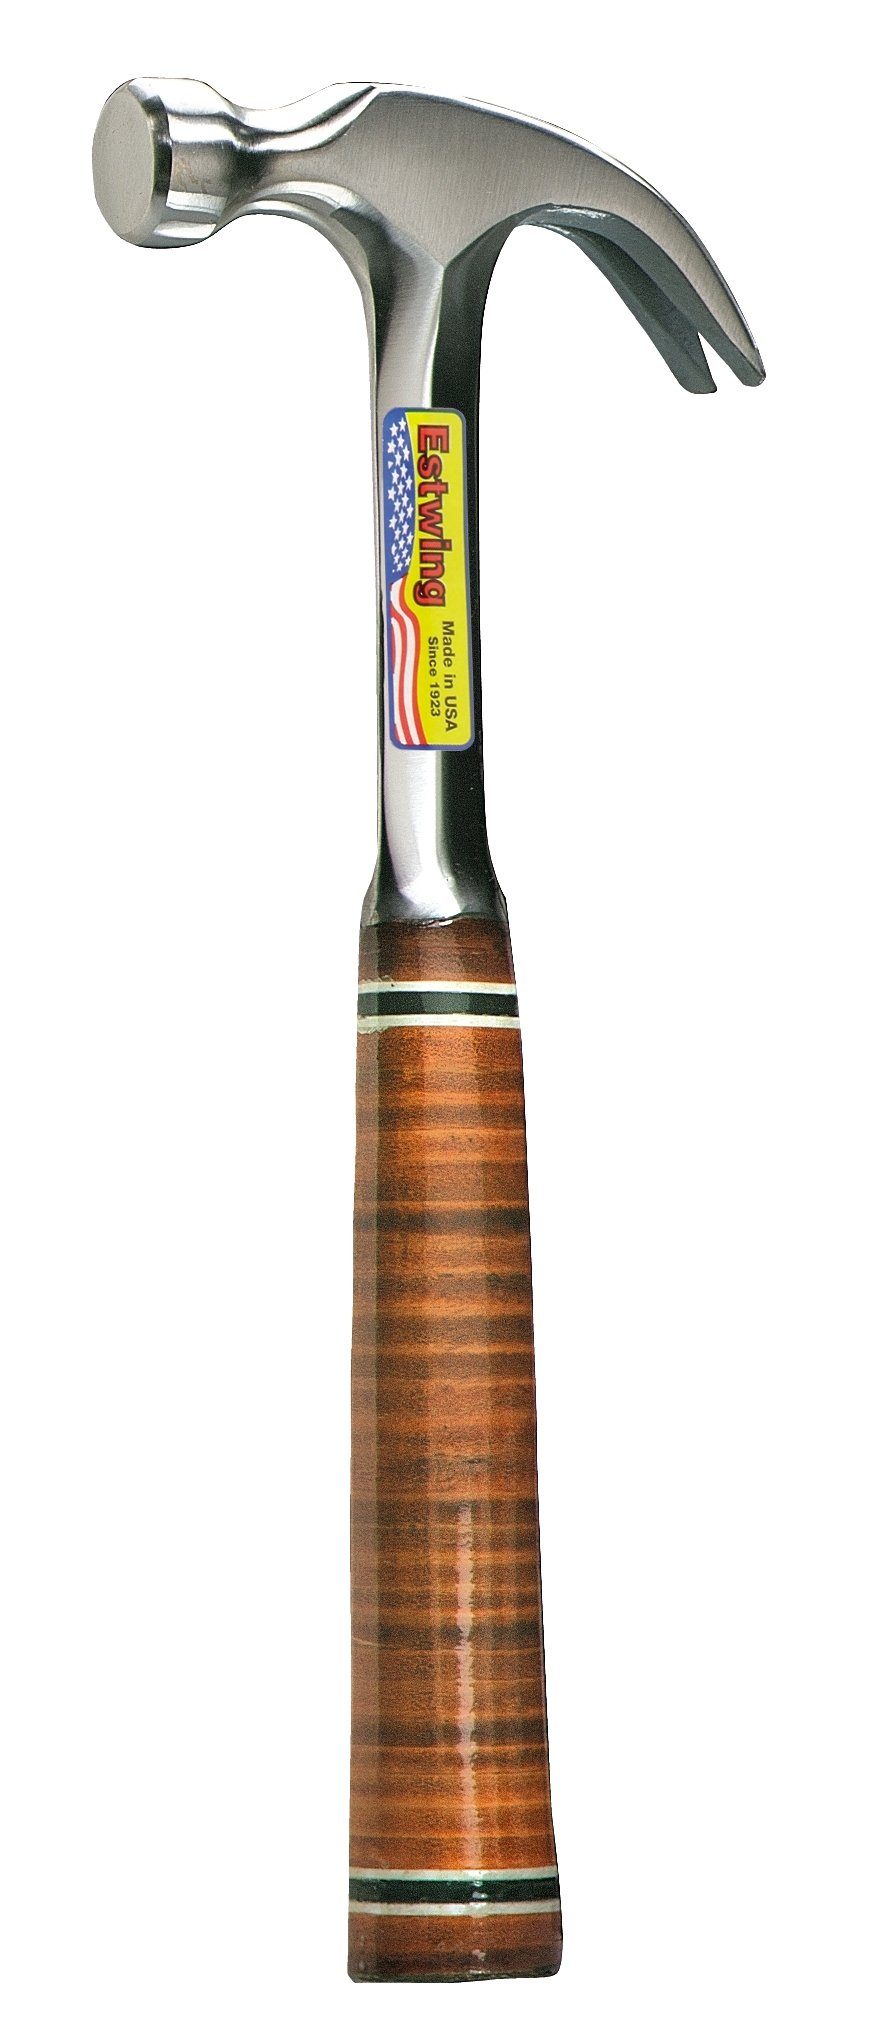 Estwing Hammer ESTWING Klauenhammer mit Ledergriff, gekröpft, Ø22mm 340g